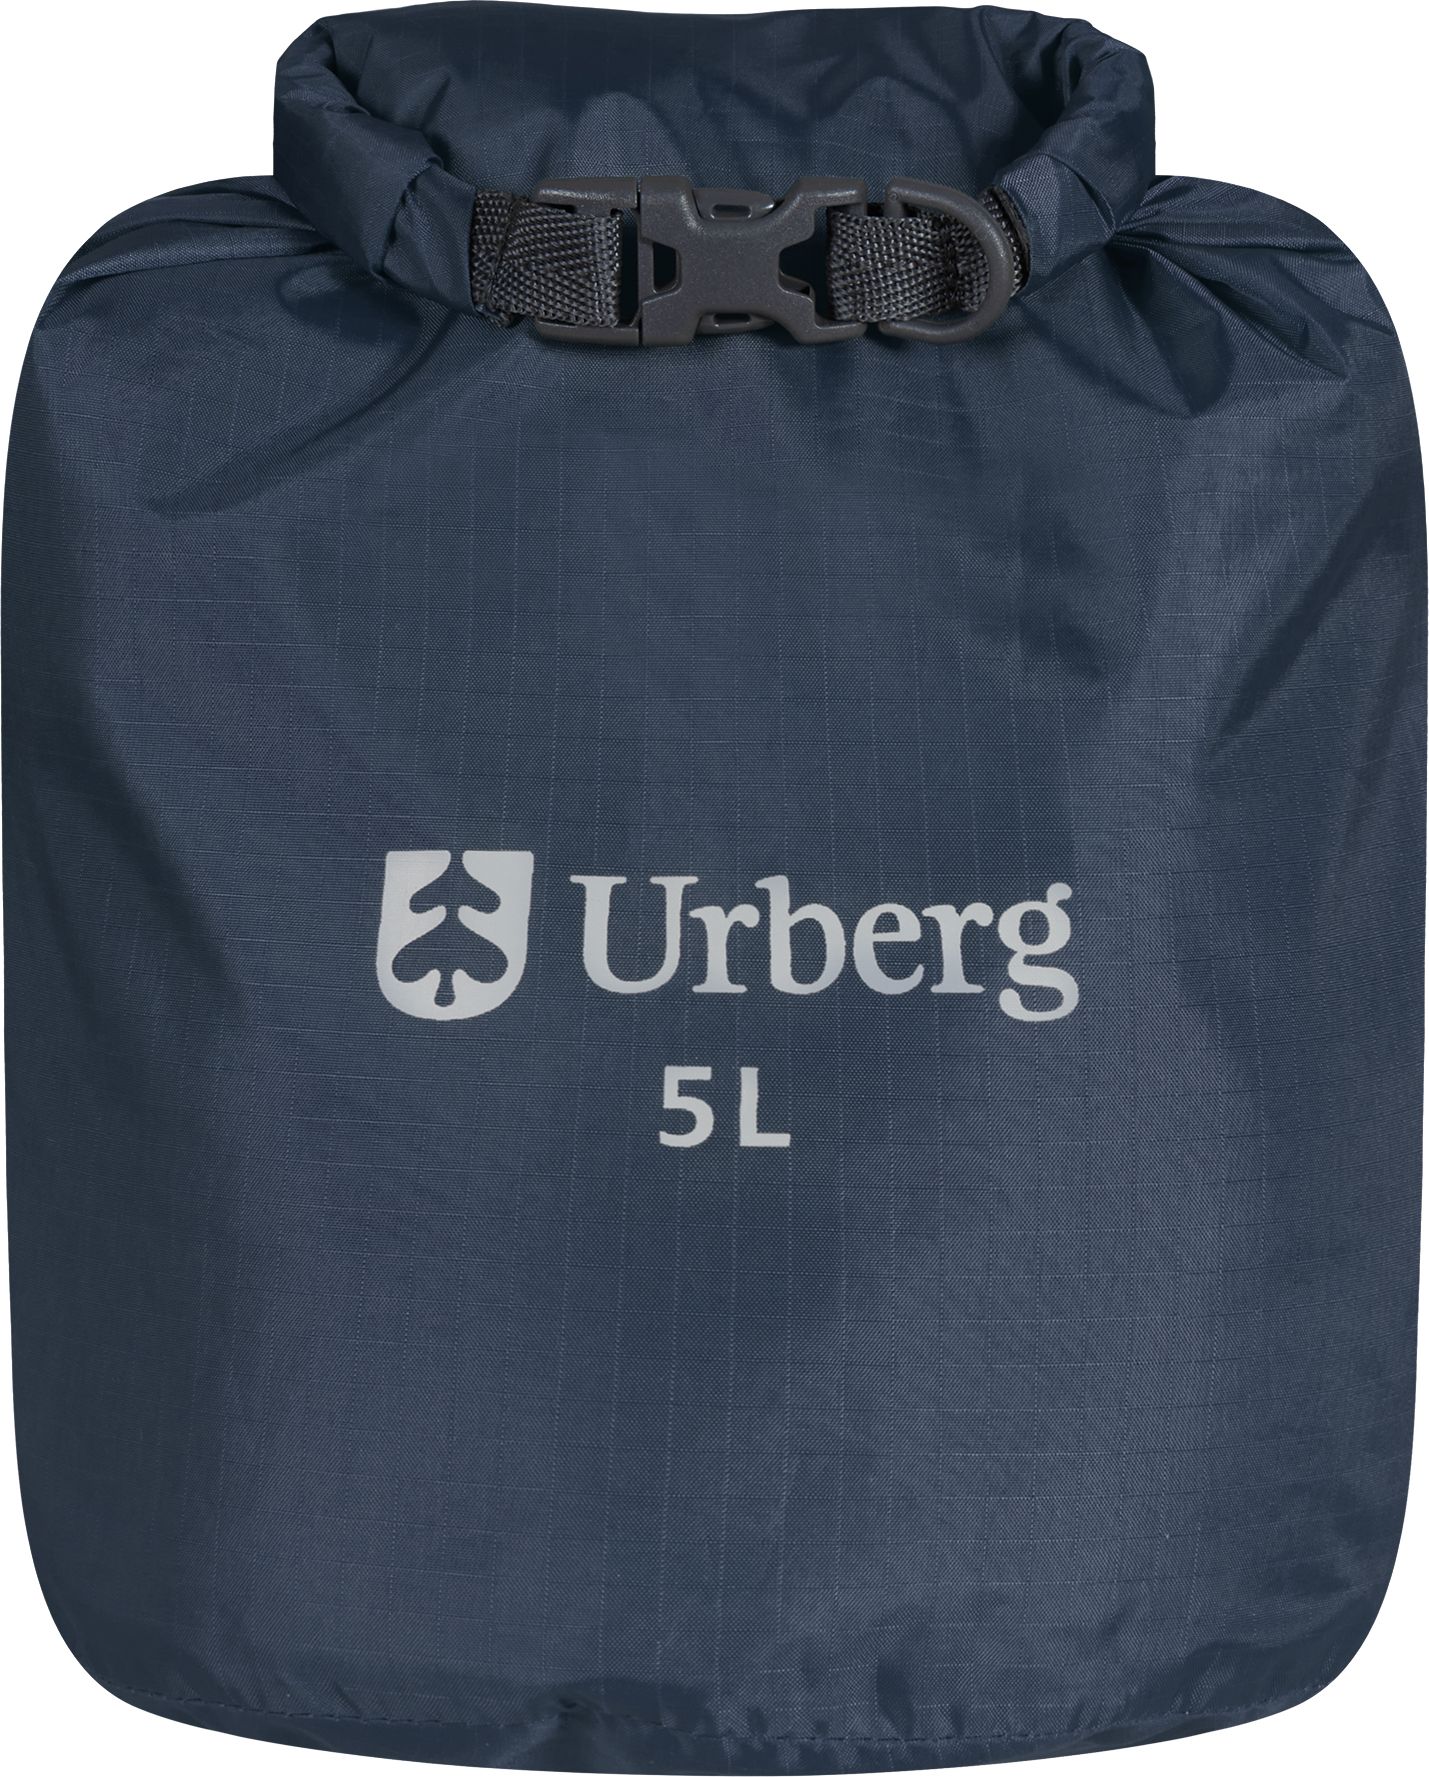 Urberg Dry Bag 5 L Midnight Navy